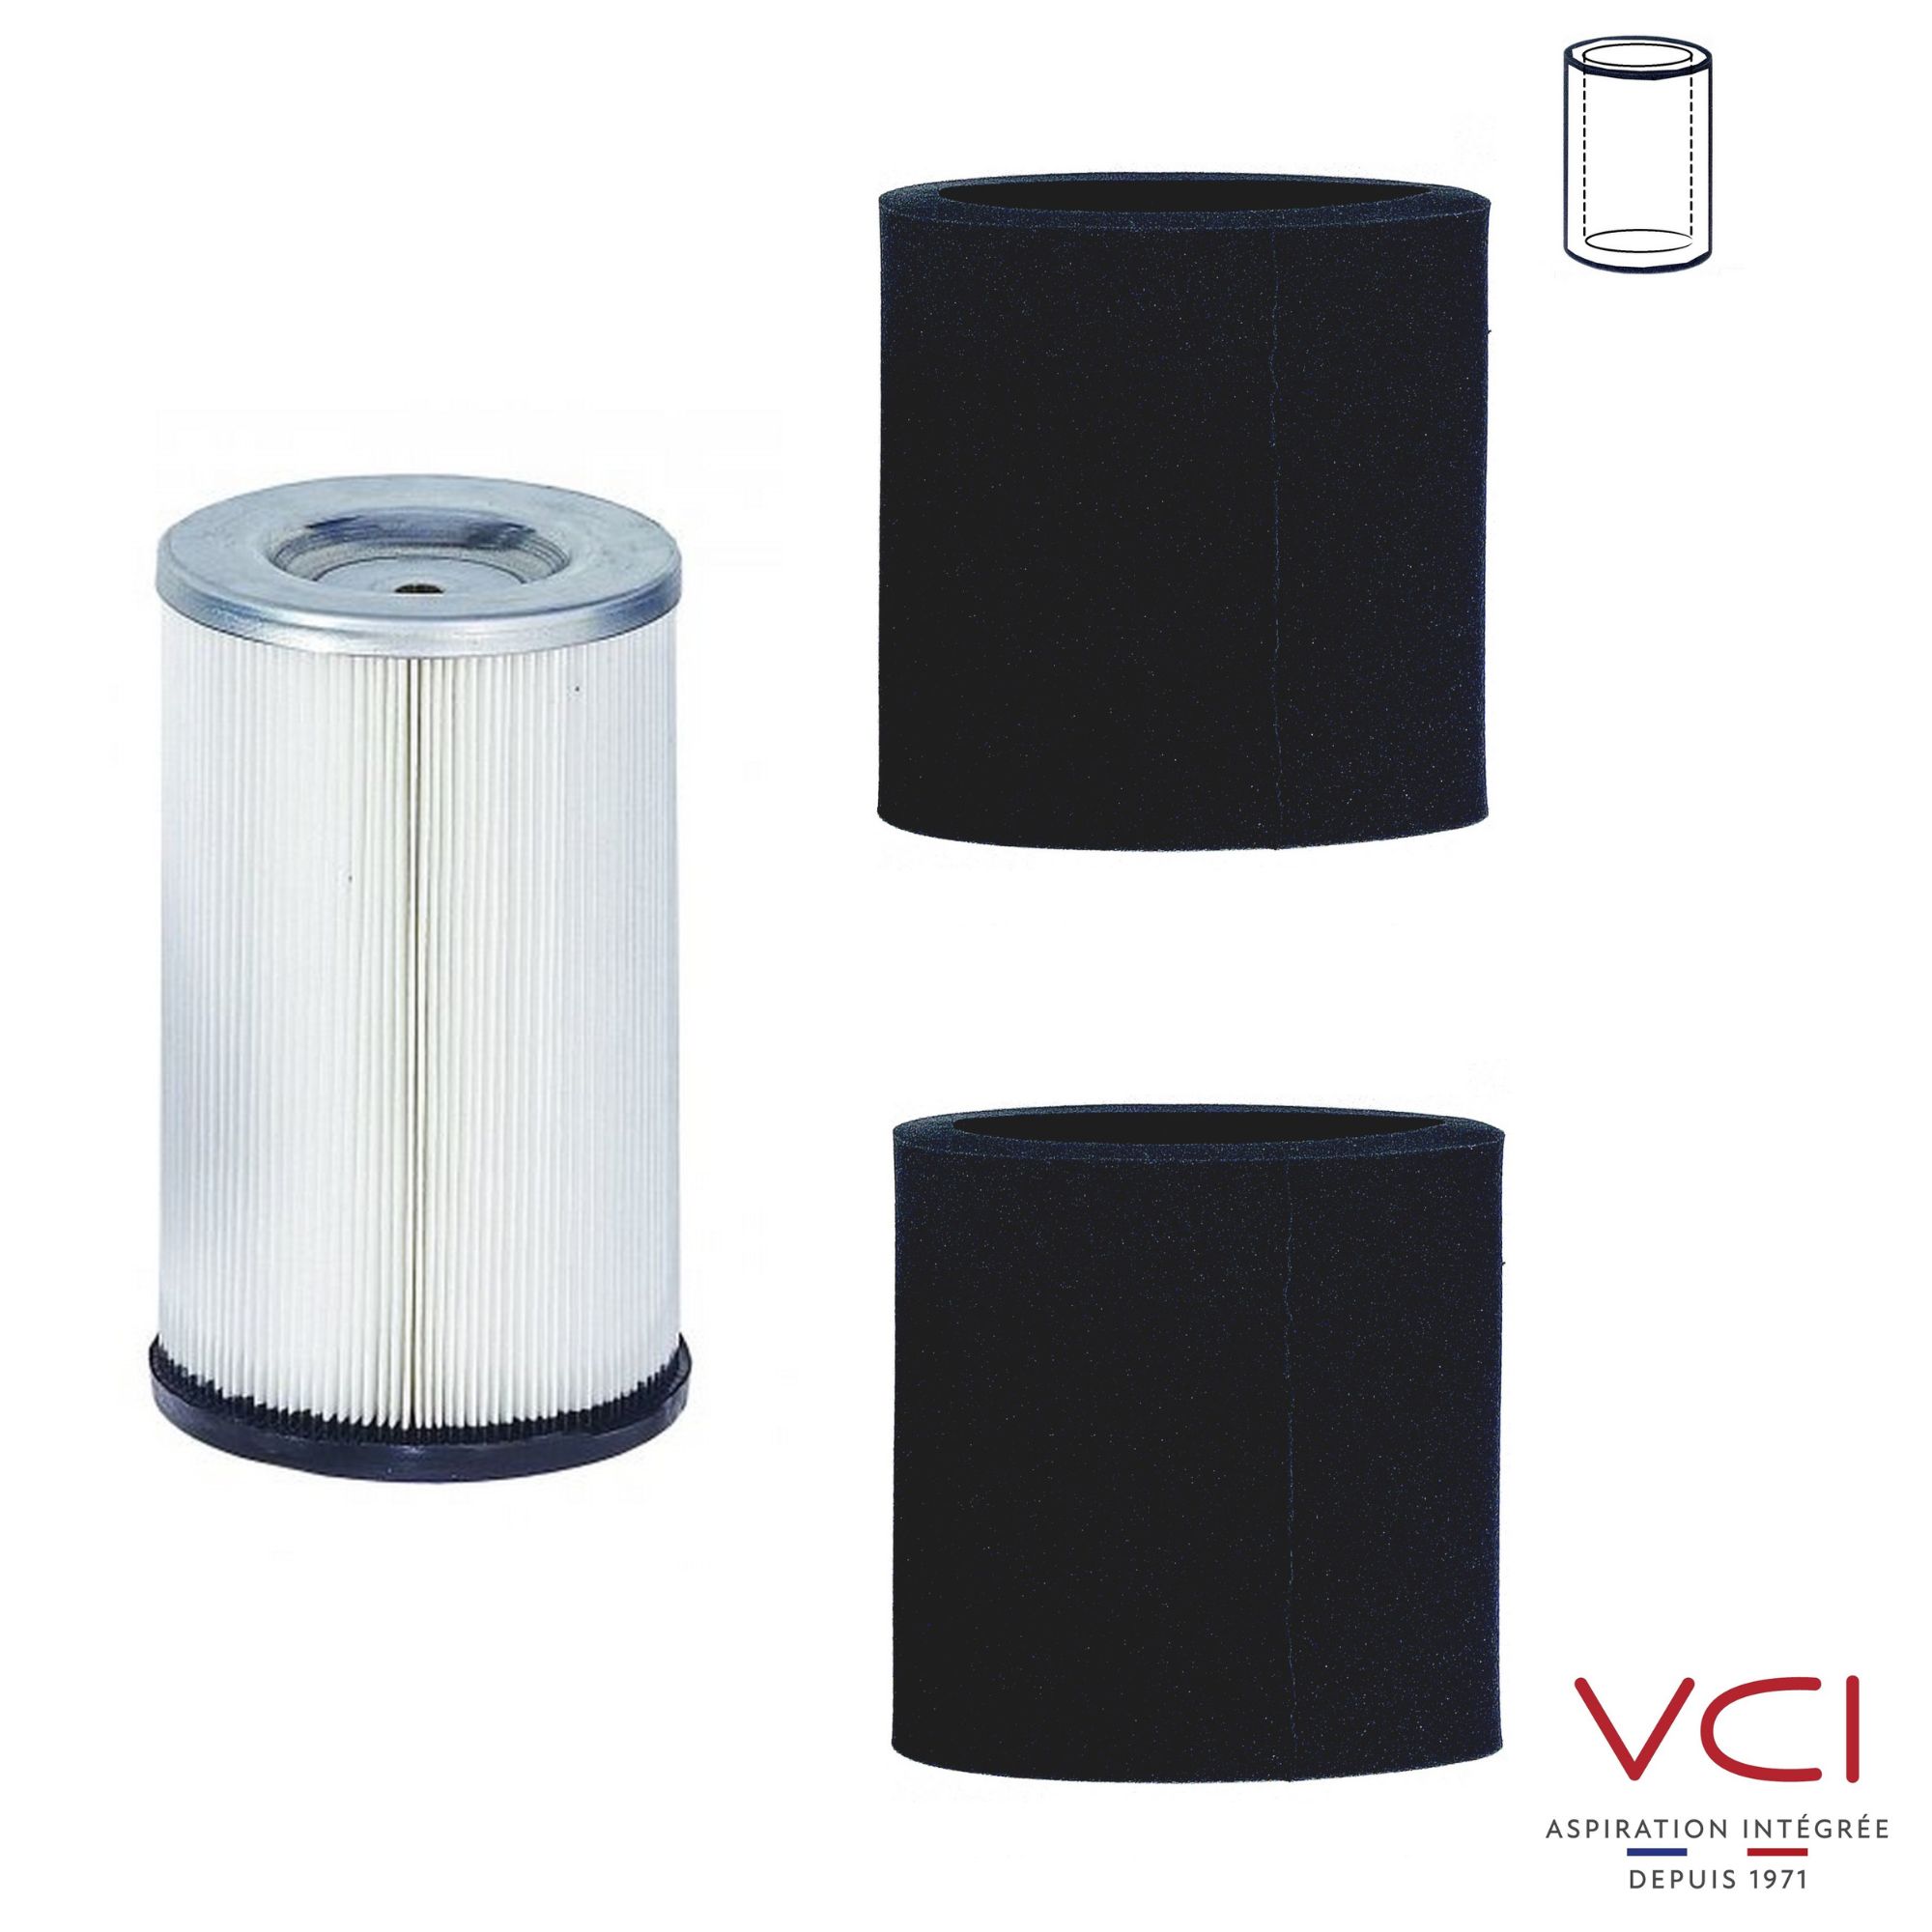 Filtre et pré-filtres pour entretien de centrale d'aspiration VCI.